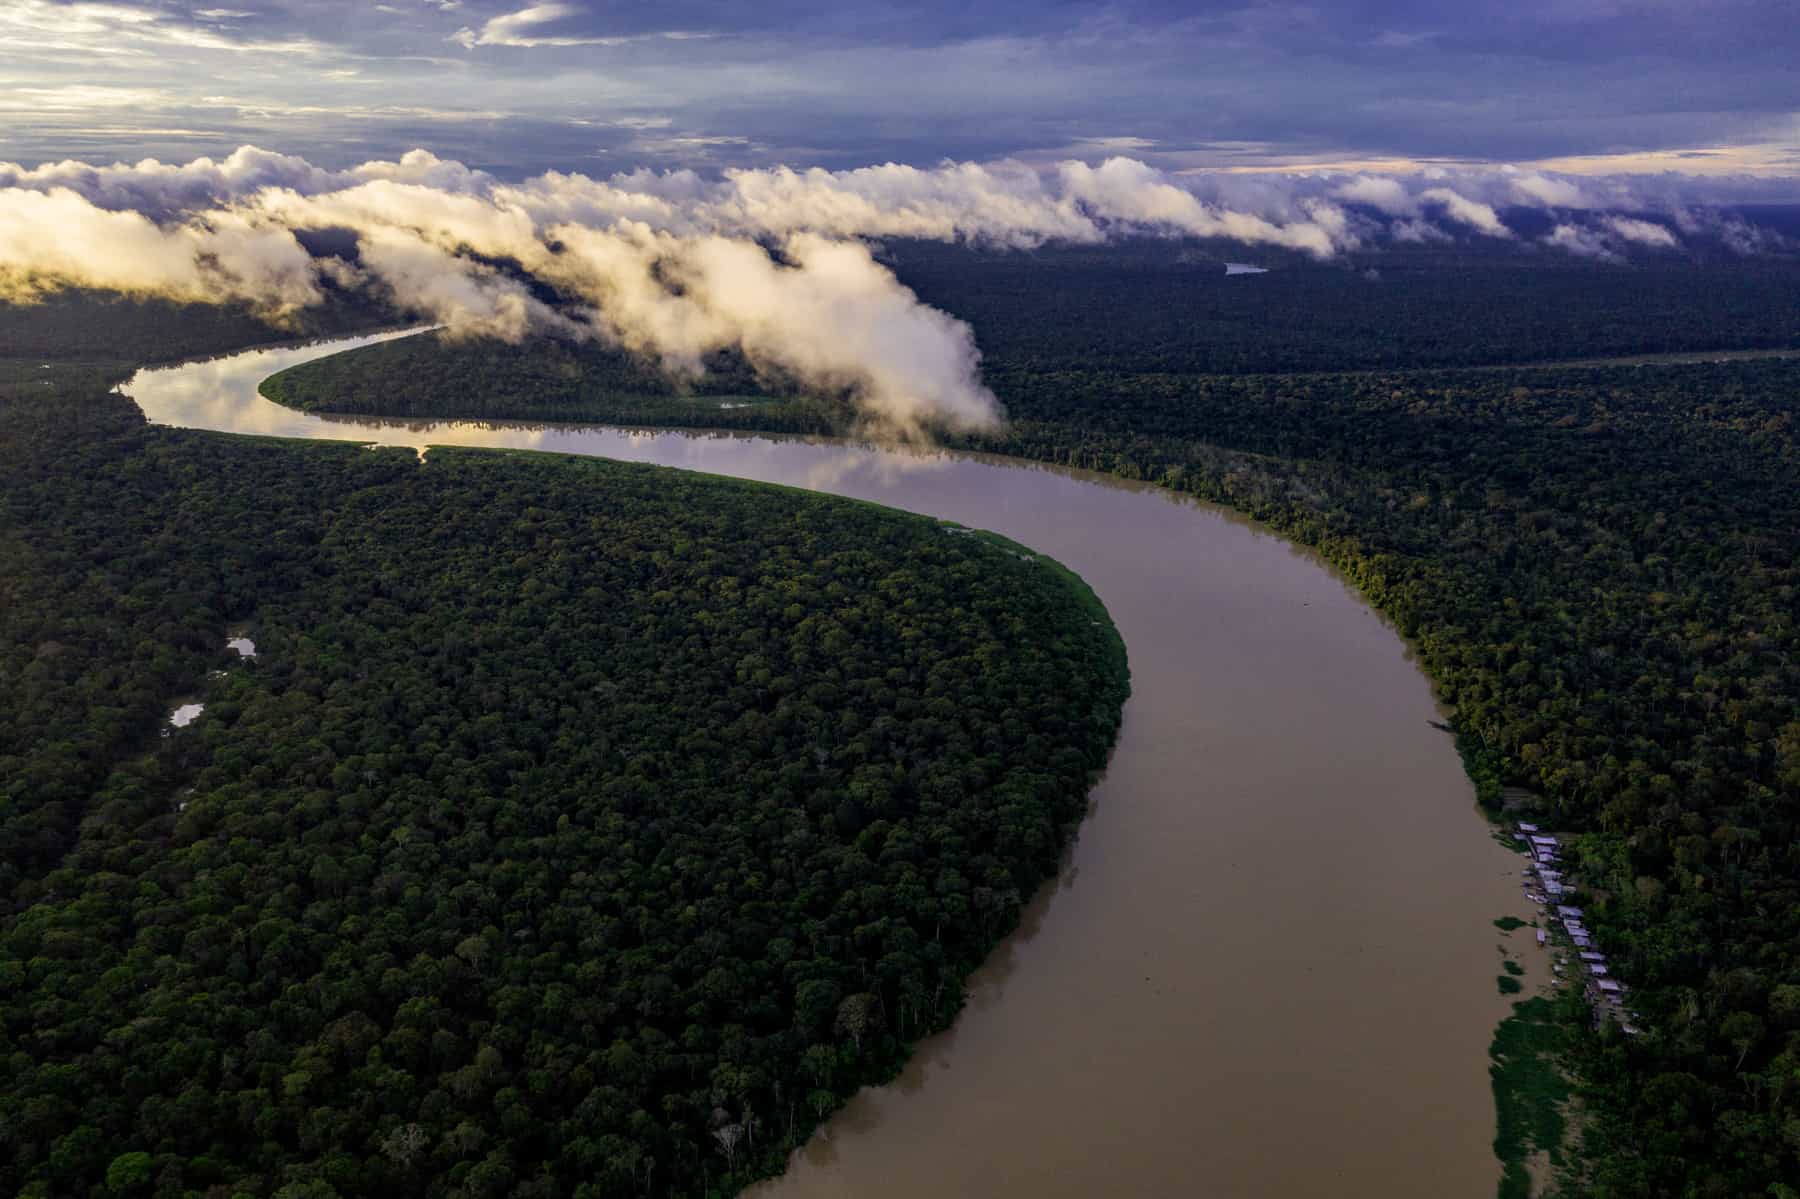 Das Dorf Uacari im West-Amazonas-Gebiet ist bis auf wenige Hütten am Ufer komplett vom Regenwald überdeckt. Von hier aus startet der Biologe und Naturschützer João Campos-Silva zu seinen Expeditionen, um den Arapaima, den größten Süßwasserfisch der Erde, vor dem Aussterben zu bewahren.